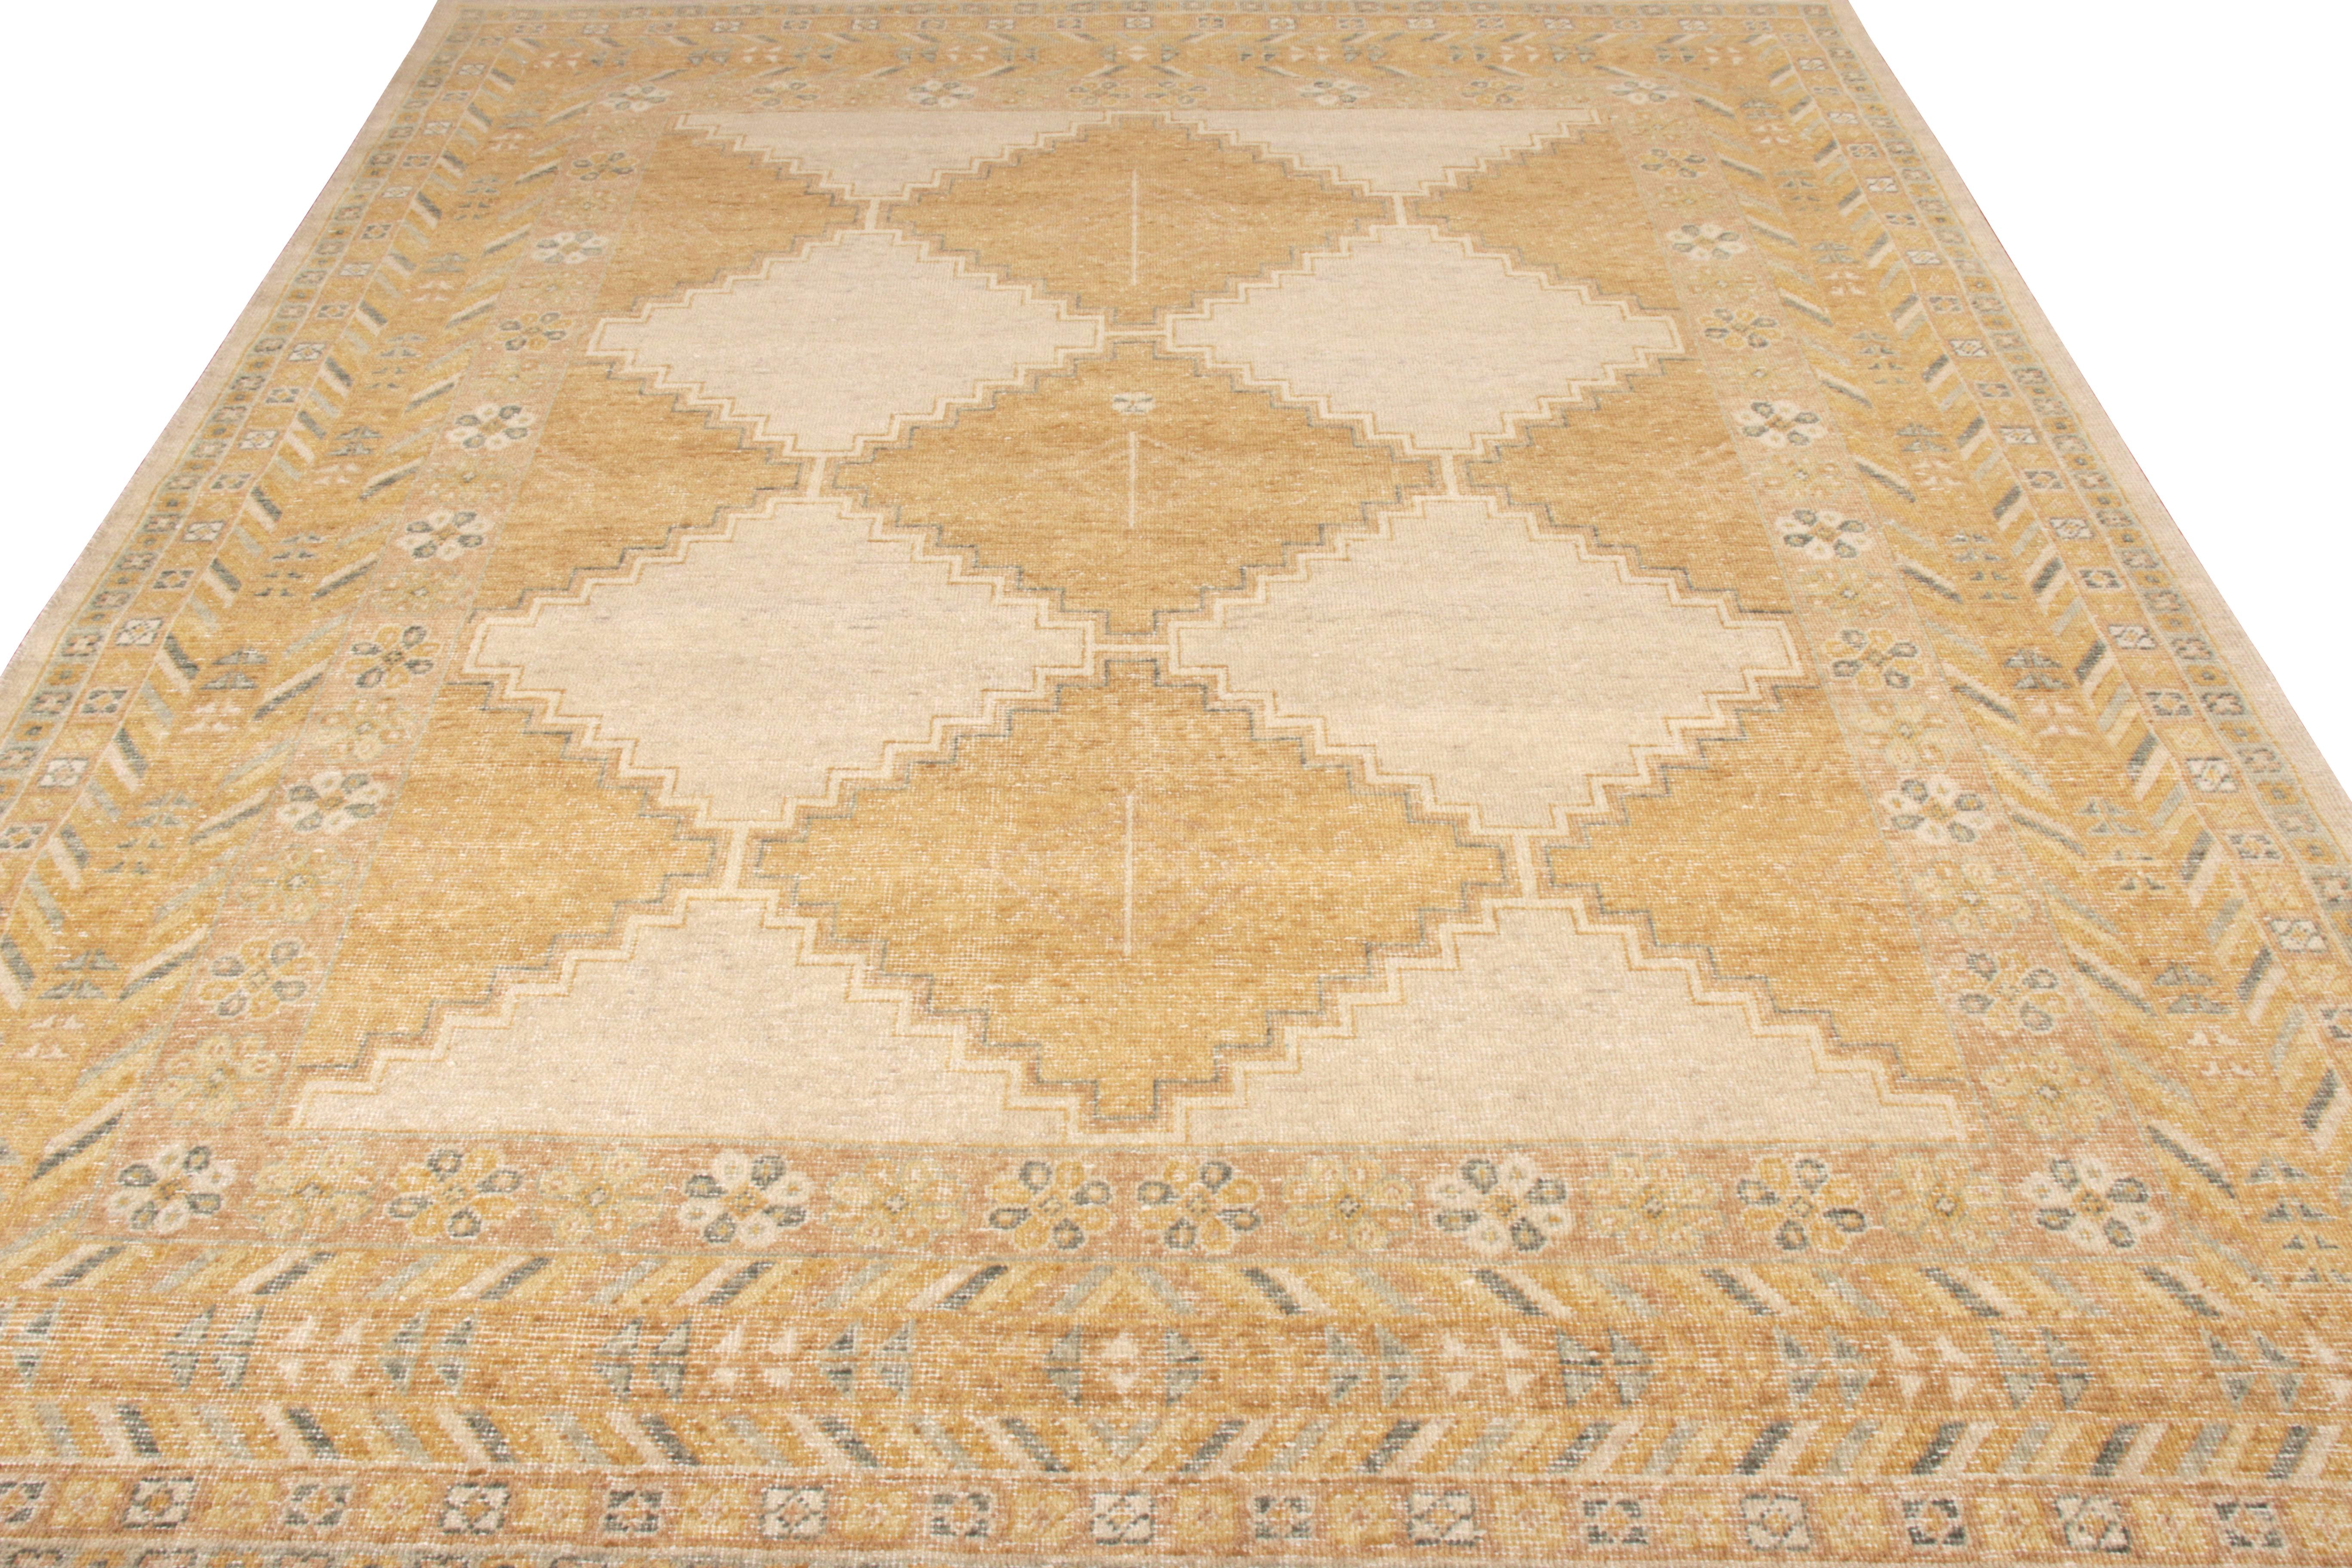 Ein einladender Teppich im Used-Look, erhältlich in der Homage Collection von Rug & Kilim. Dieses 8 x 10 große Exemplar aus handgeknüpfter Wolle zeigt ein klassisches beigefarbenes, geometrisches Muster, das in einen einzigartigen, strukturierten